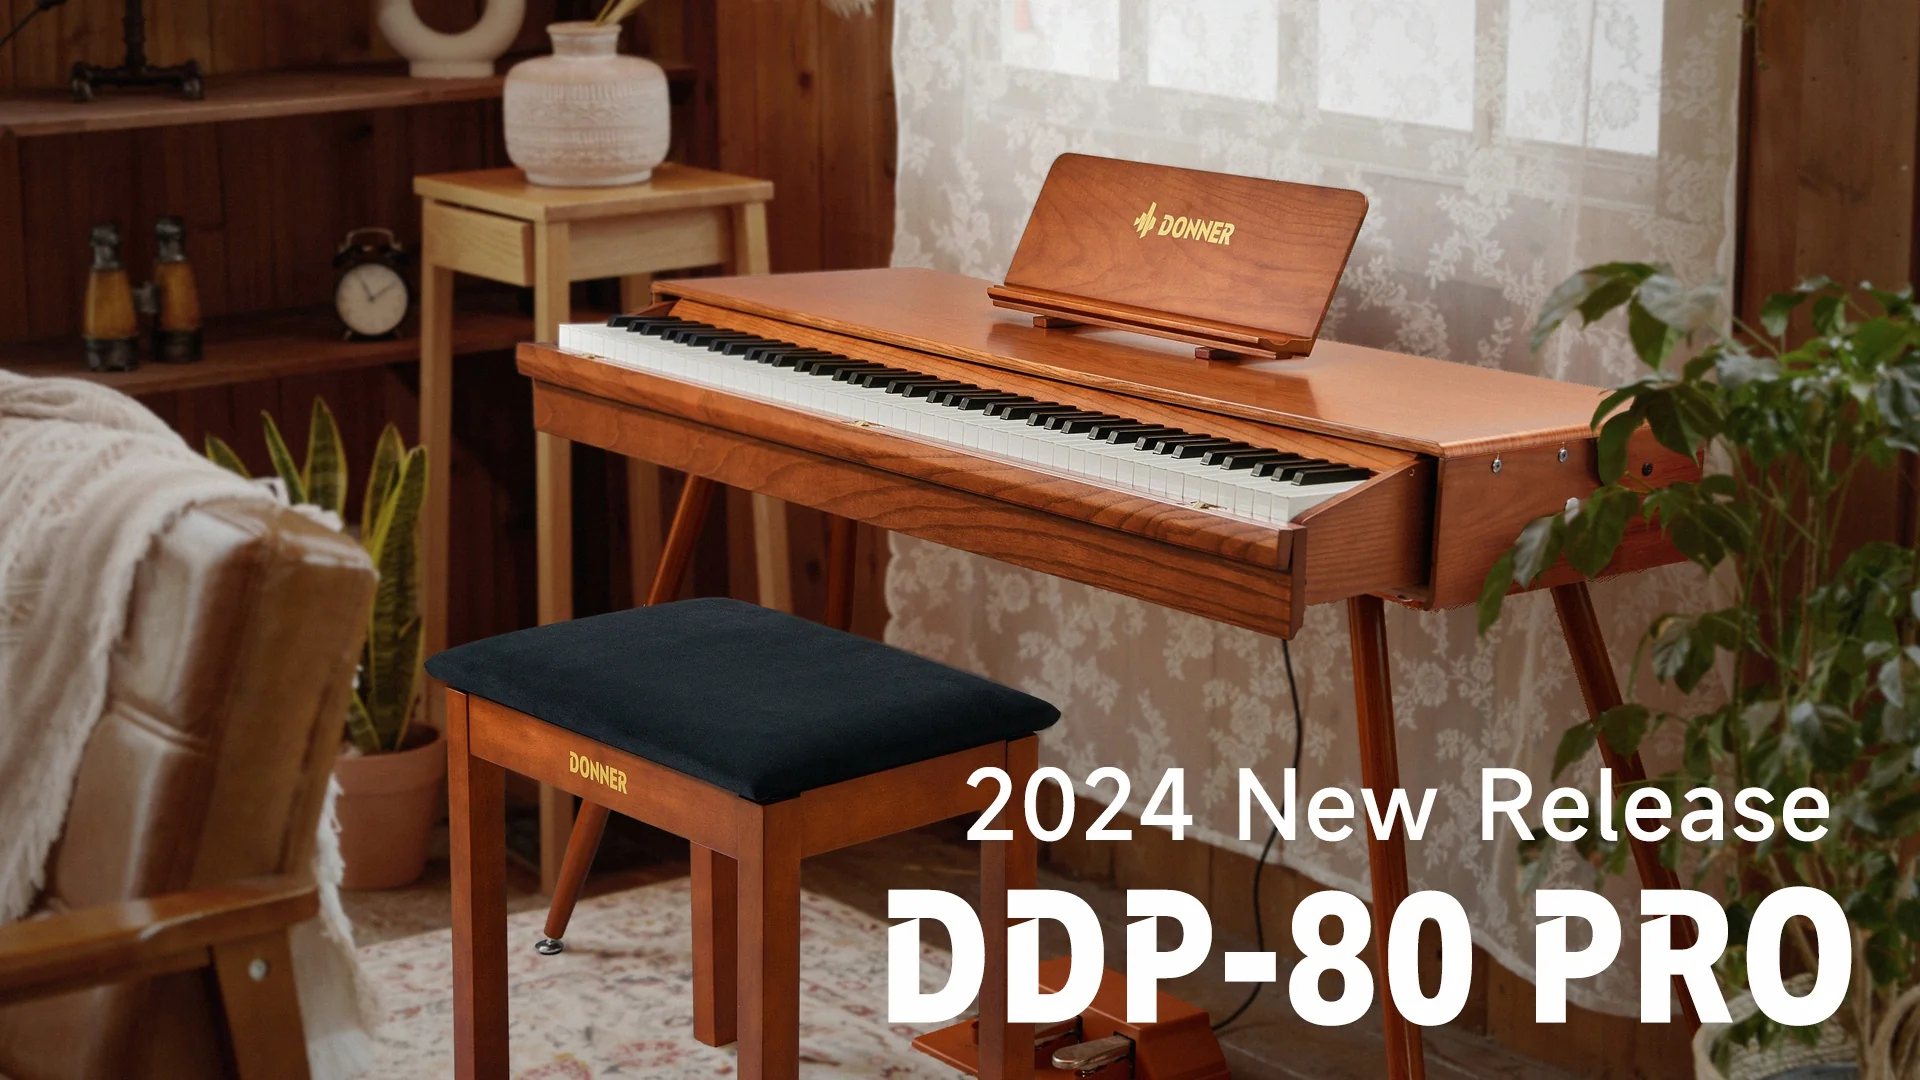 Khám Phá Donner DDP-80 Pro: Lựa Chọn Hoàn Hảo Cho Người Mới Bắt Đầu Chơi Piano Điện Tử